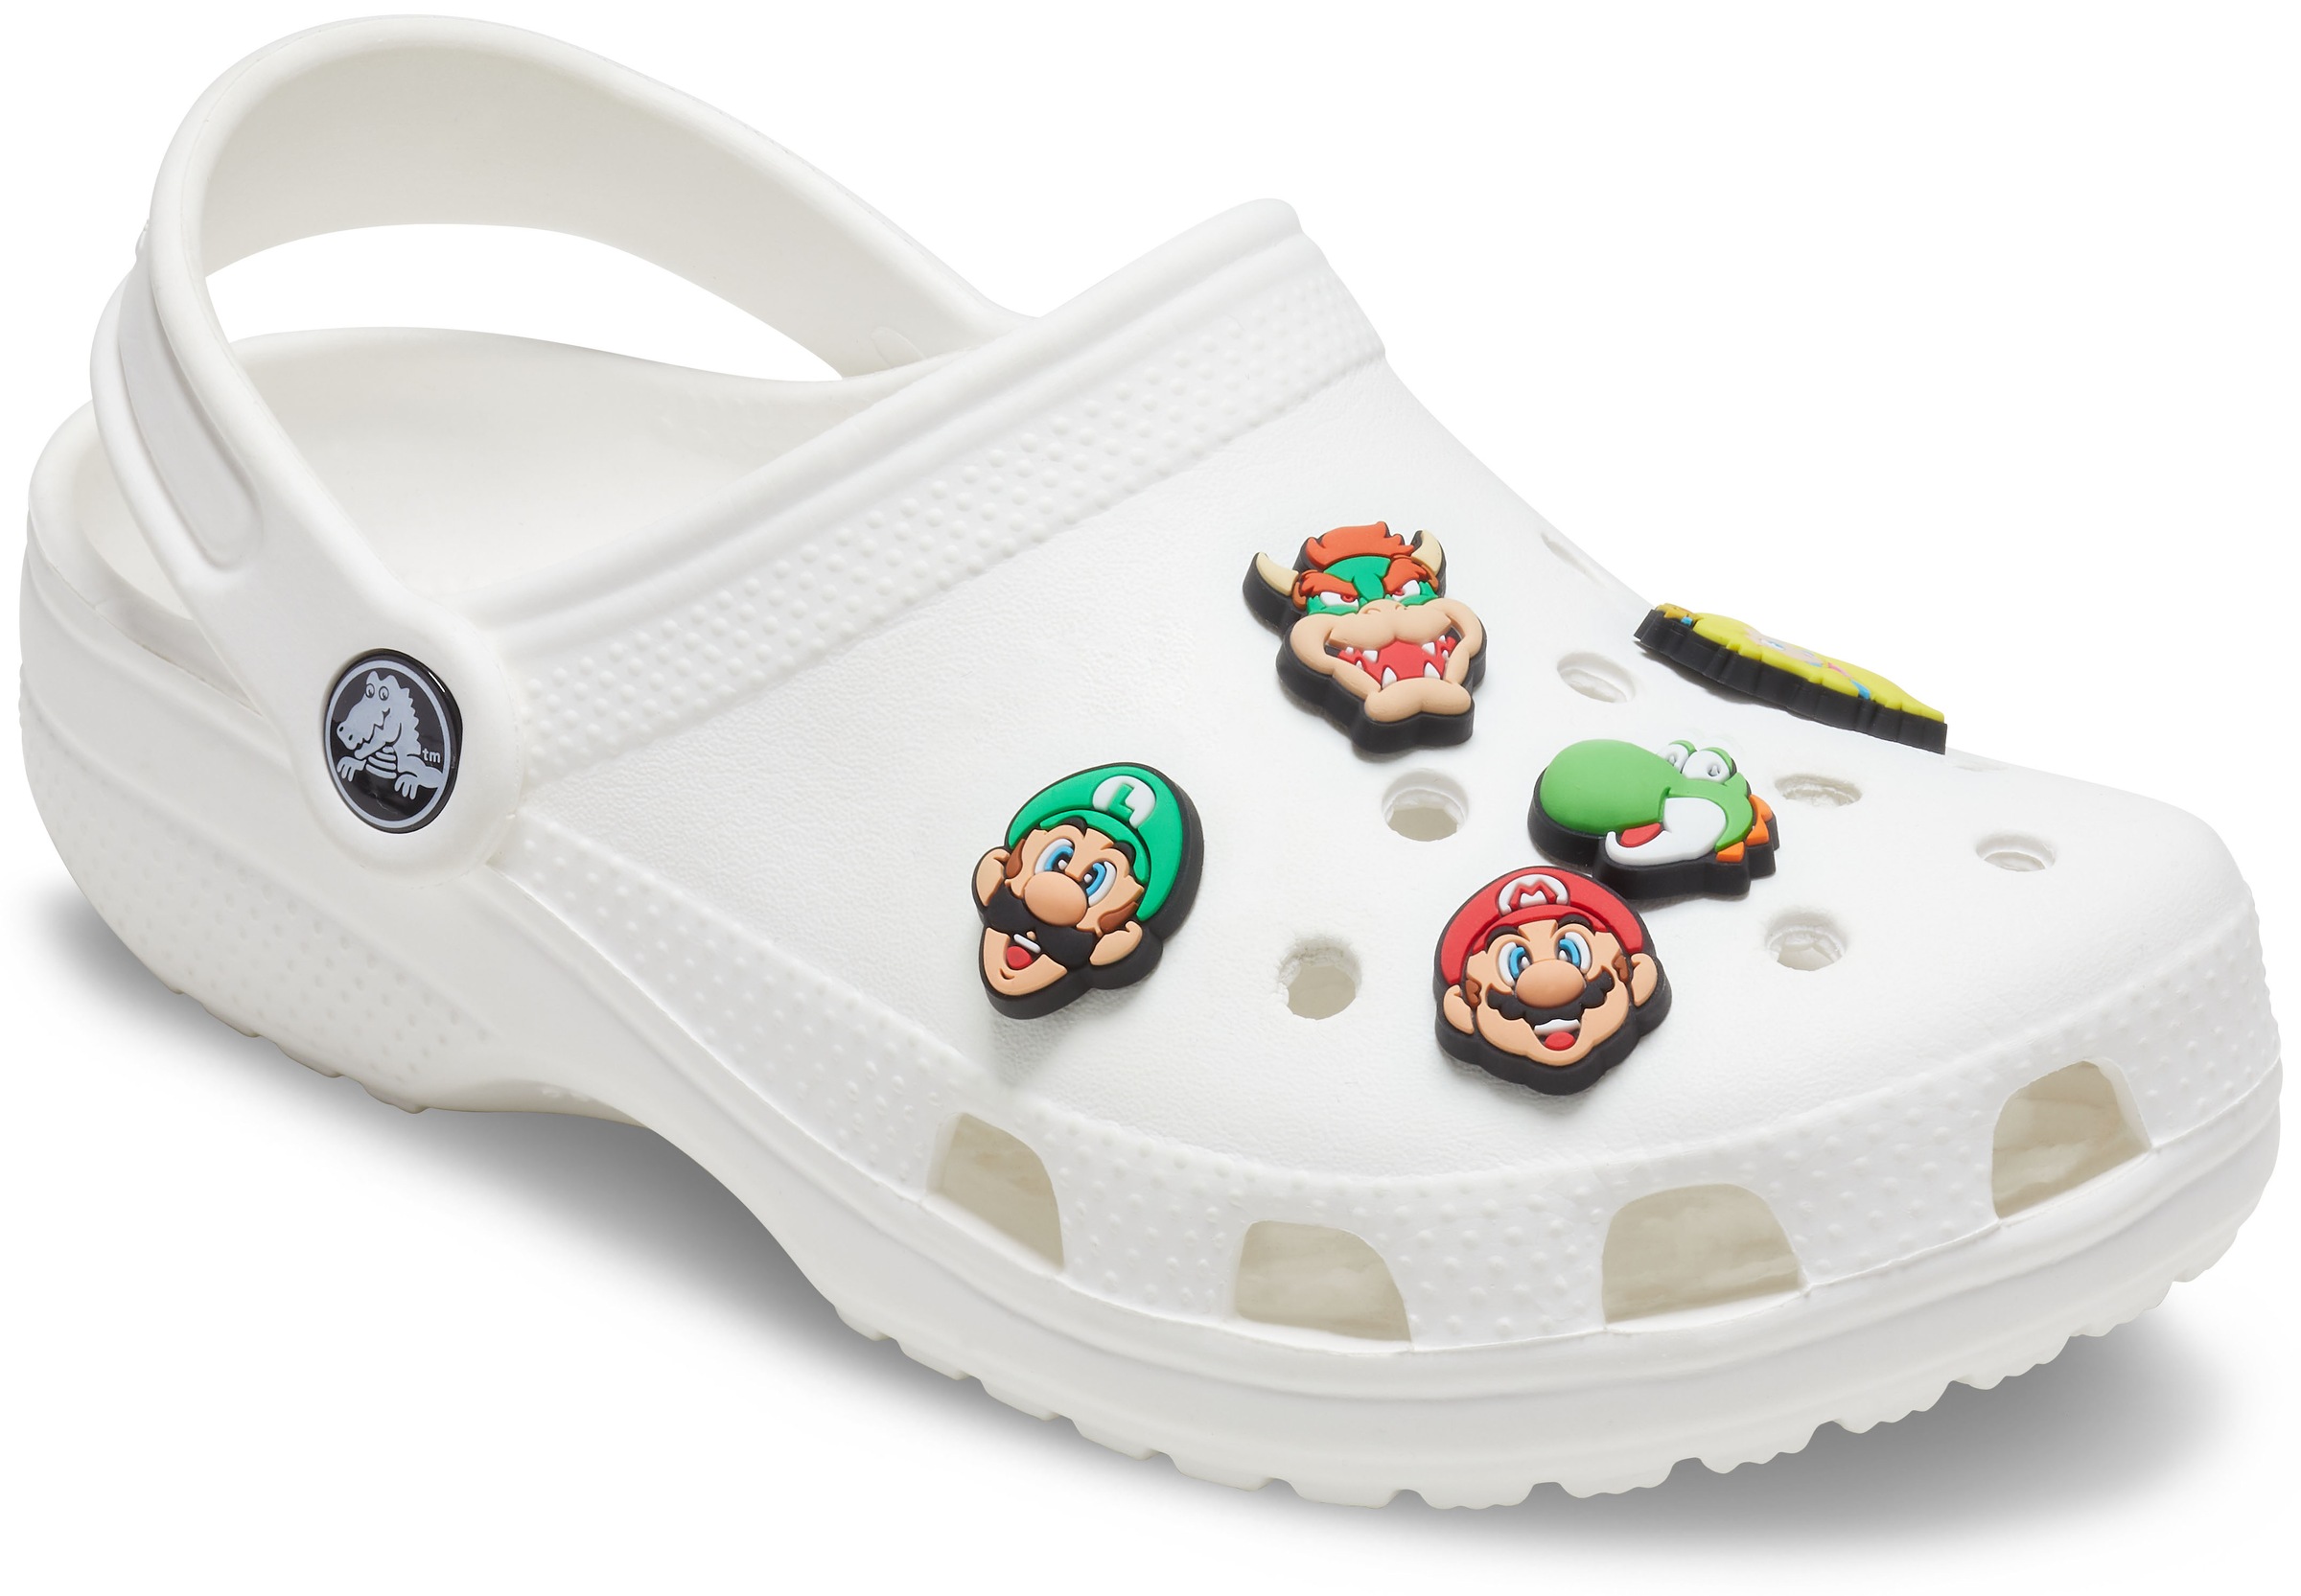 Crocs Schuhanstecker »Jibbitz™ Super Mario«, (Set, 5 tlg., Kein Spielzeug. Nicht geeignet für Kinder unter 3 Jahren.), zum individuellen stylen